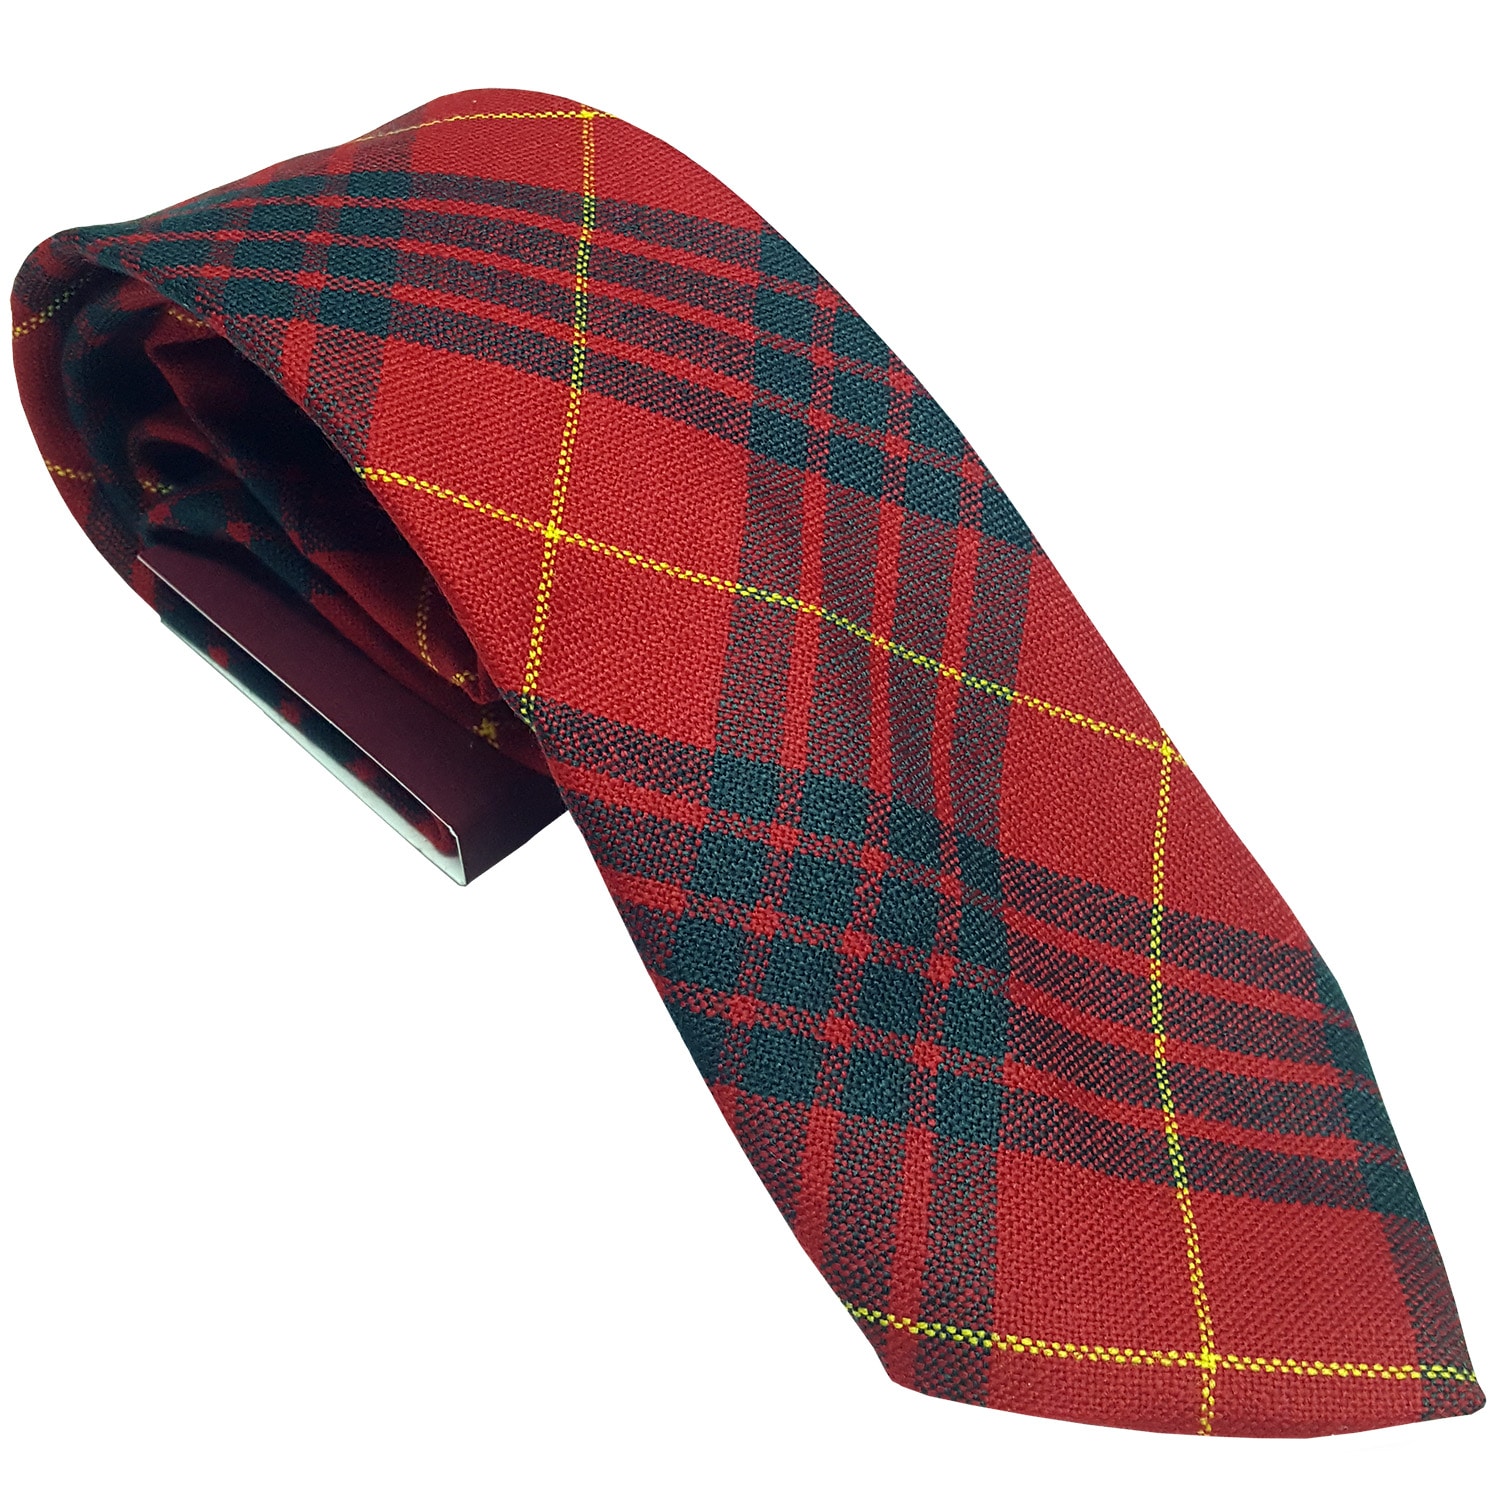 Gunn Modern Tartan Spring Weight Premium Wool Neck Tie Made in Scotland 